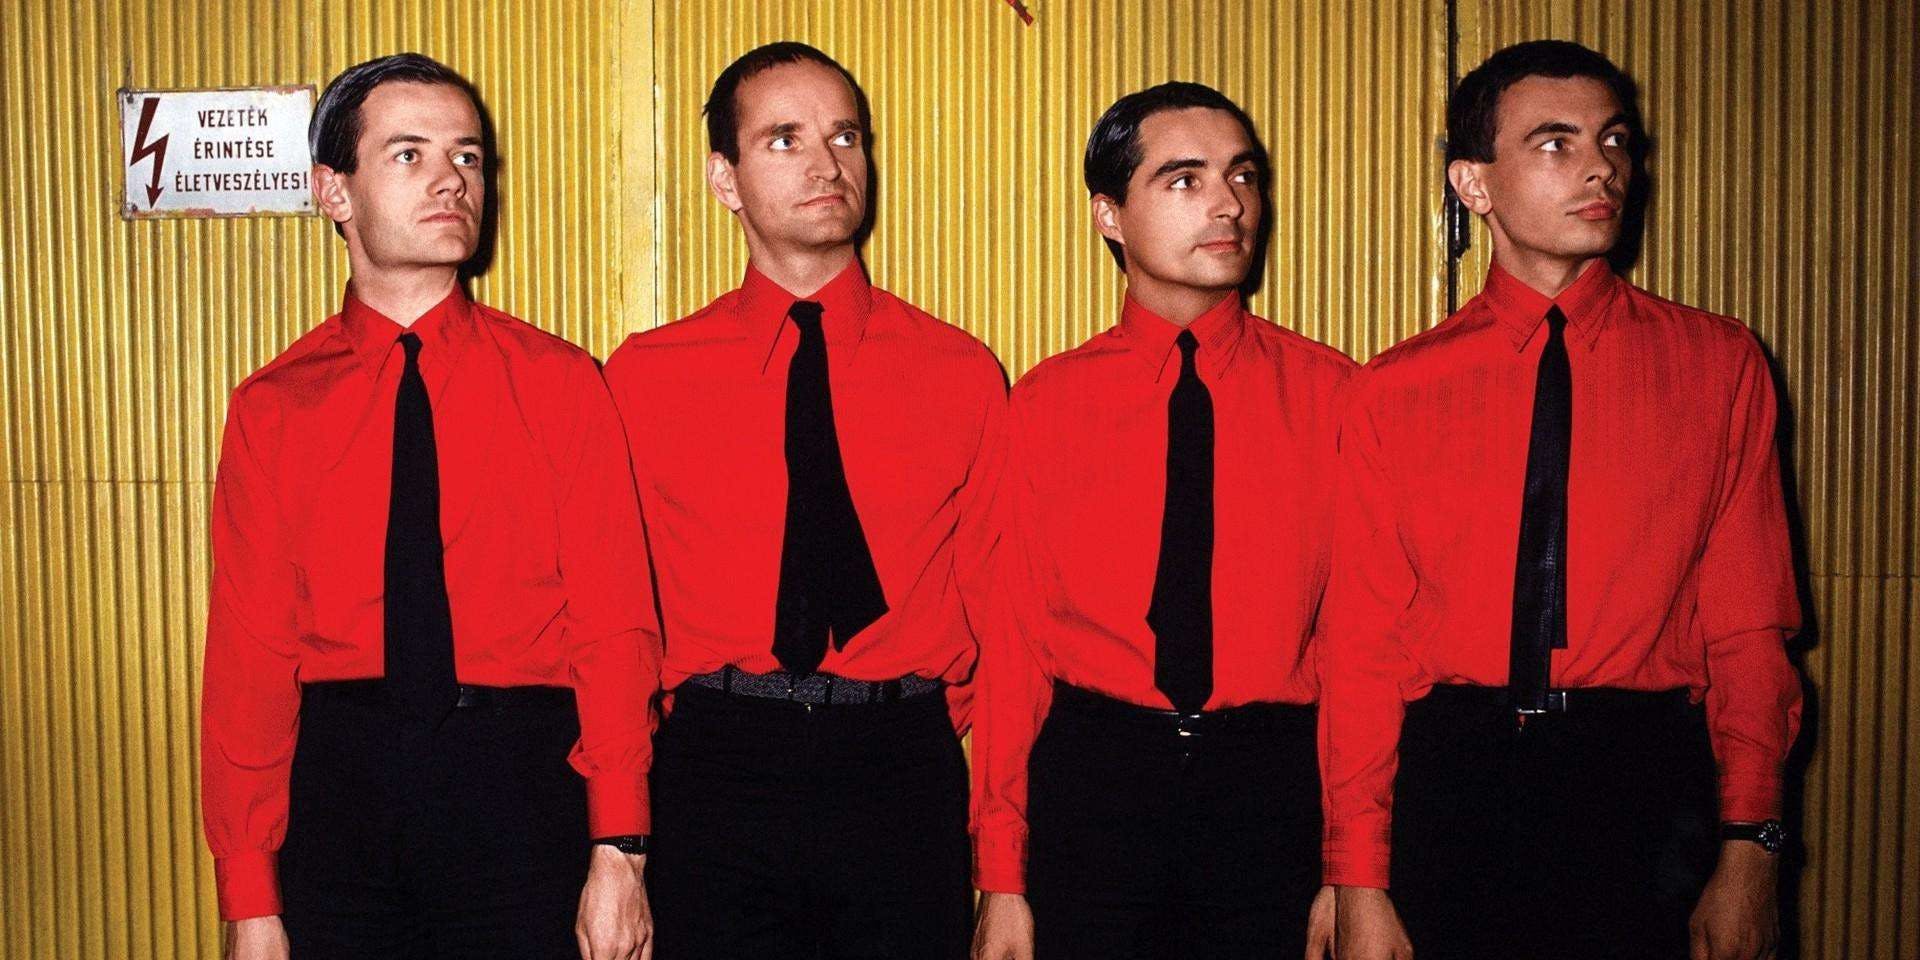 Best Kraftwerk Songs of All Time - Top 10 Tracks